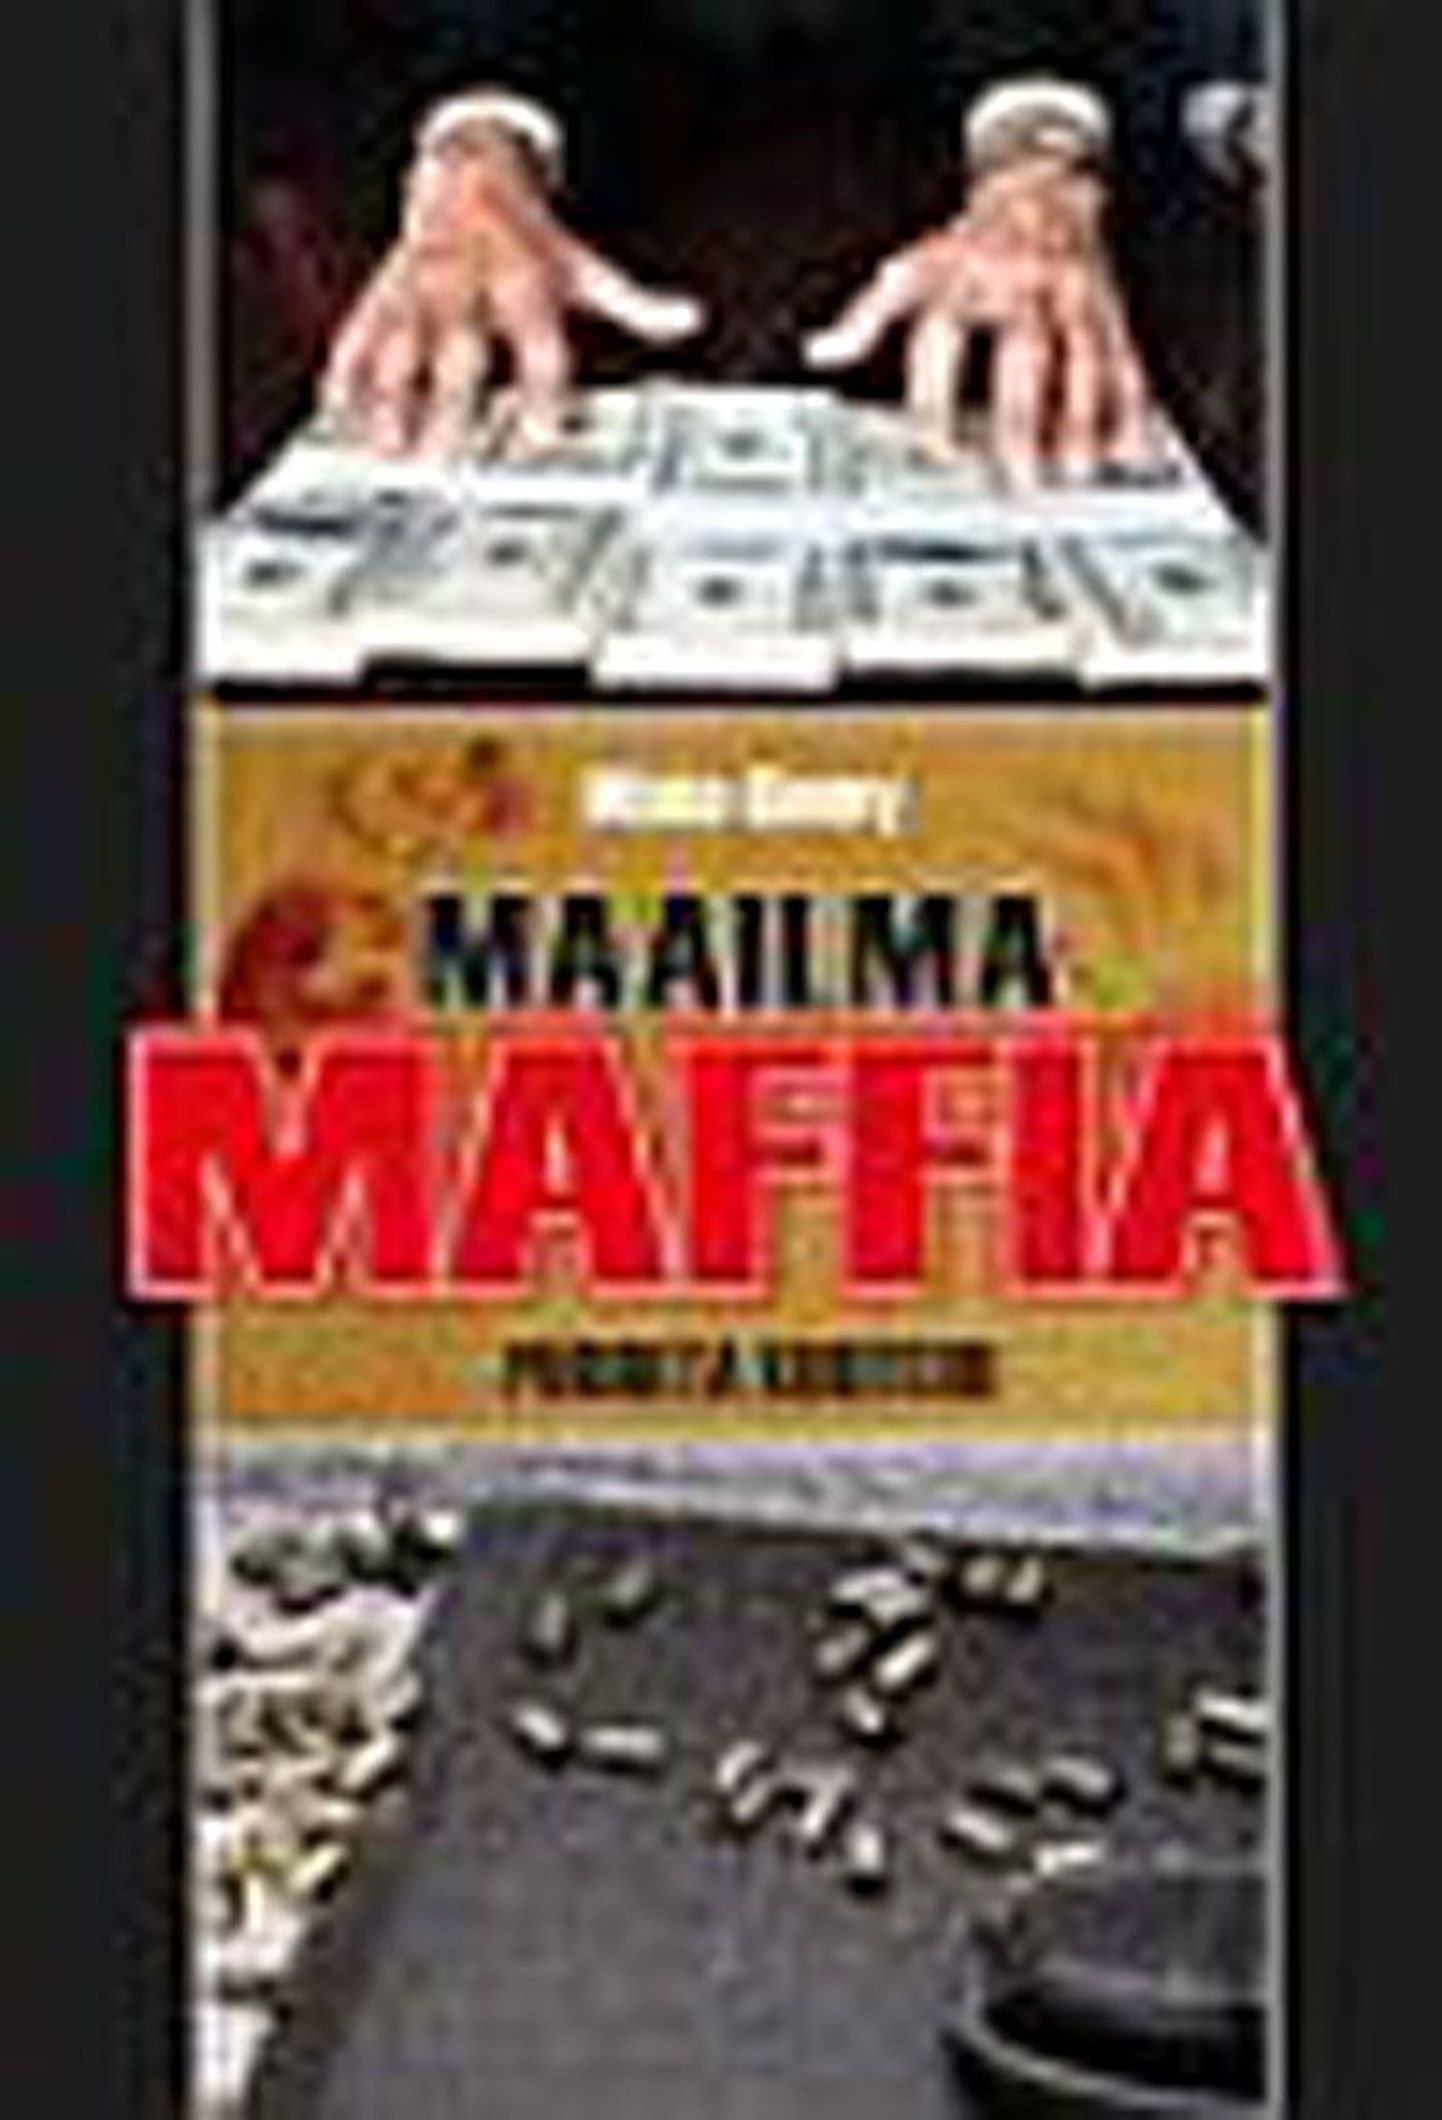 Raamat

Misha Glenny 
«Maailma maffia» 
Pegasus, 2009
14 lk